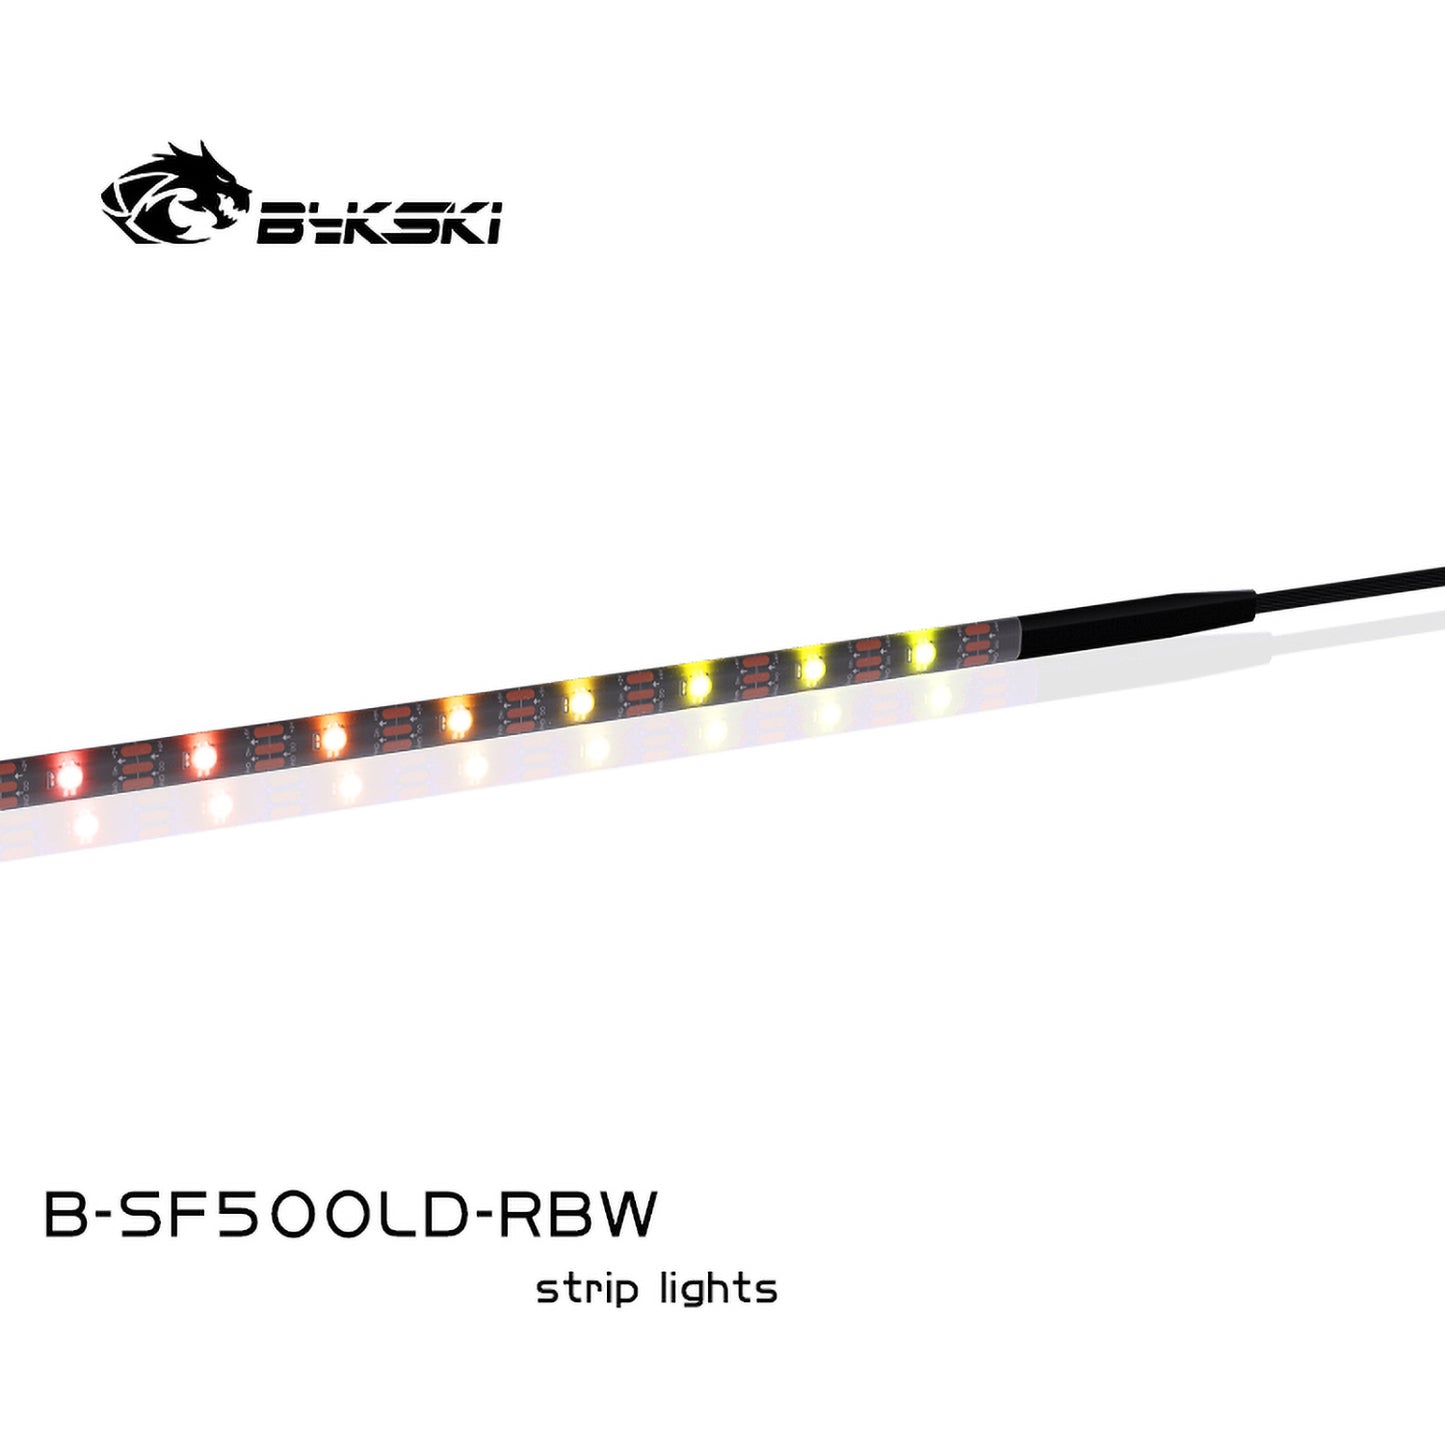 Bykski B-SF500LD-RBW/B-SF1000LD-RBW, Bandes d'éclairage RBW RGB, Bandes LED 5V, Avec adhésif 3M, Pour éclairage de boîtier